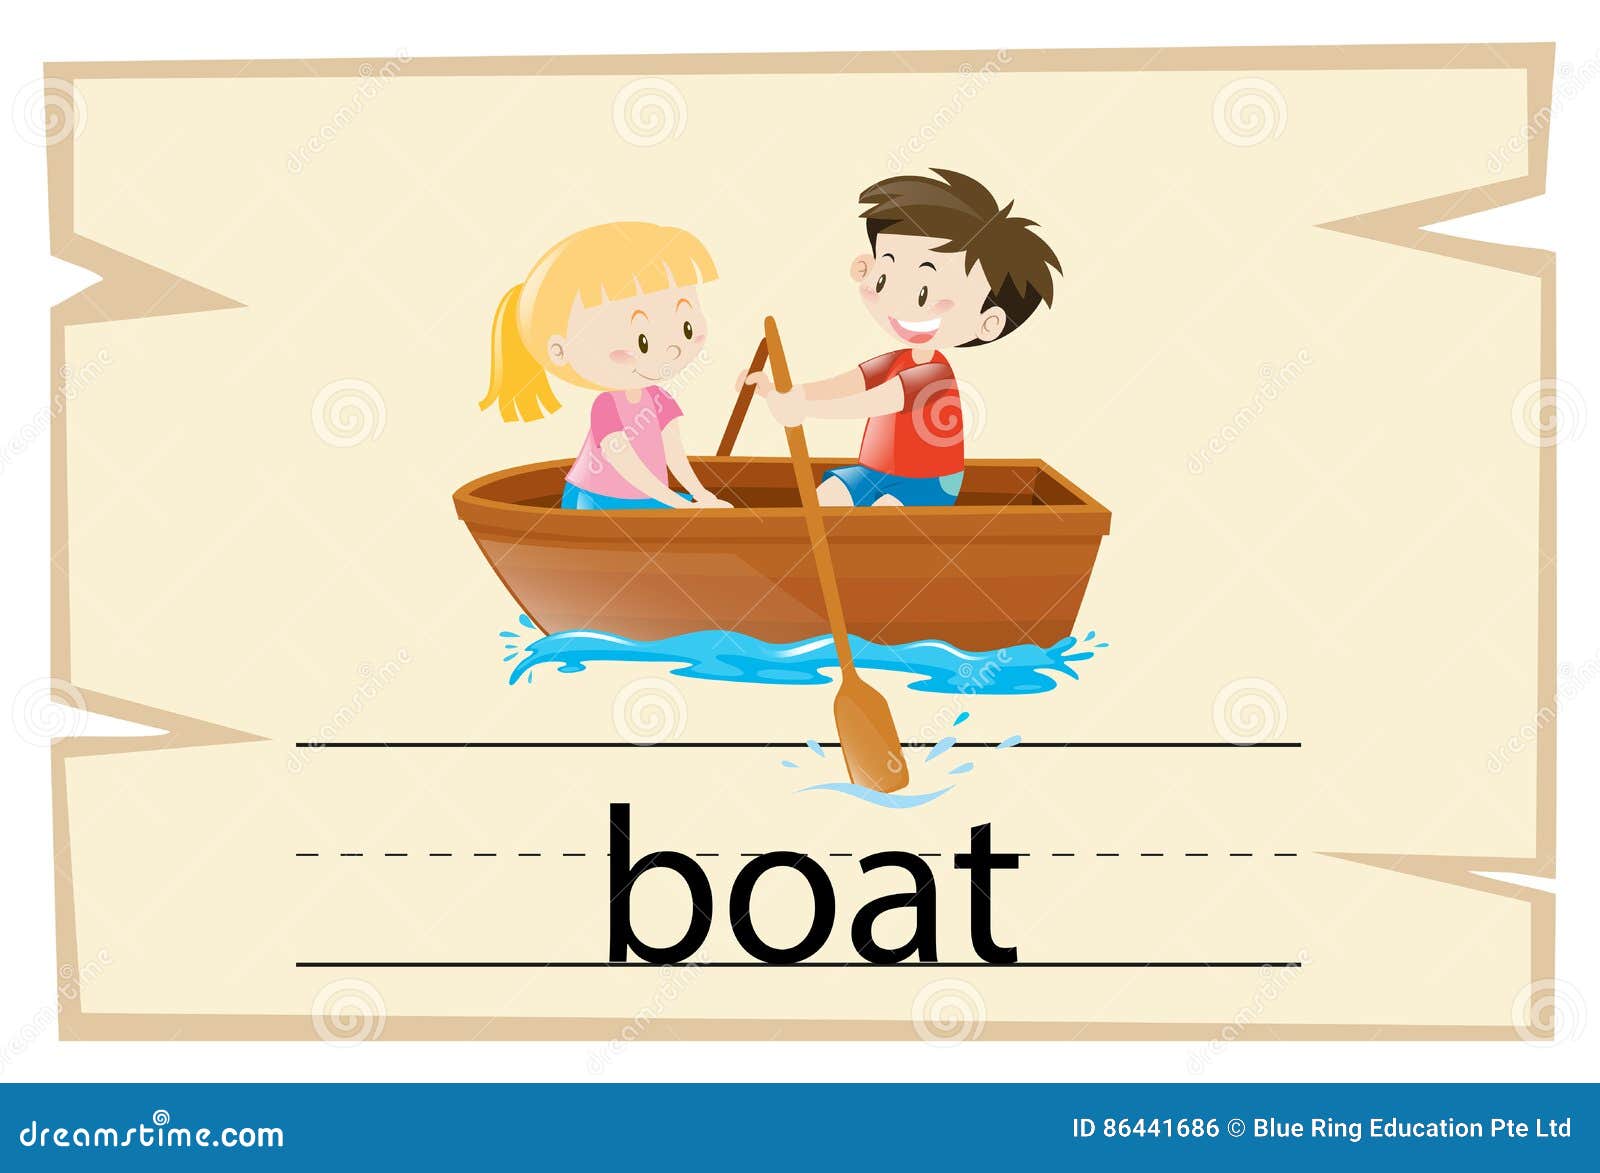 Есть слова лодка. Лодка по английскому. Boat карточка английский. Boat слово. Карточка со словом Boat.